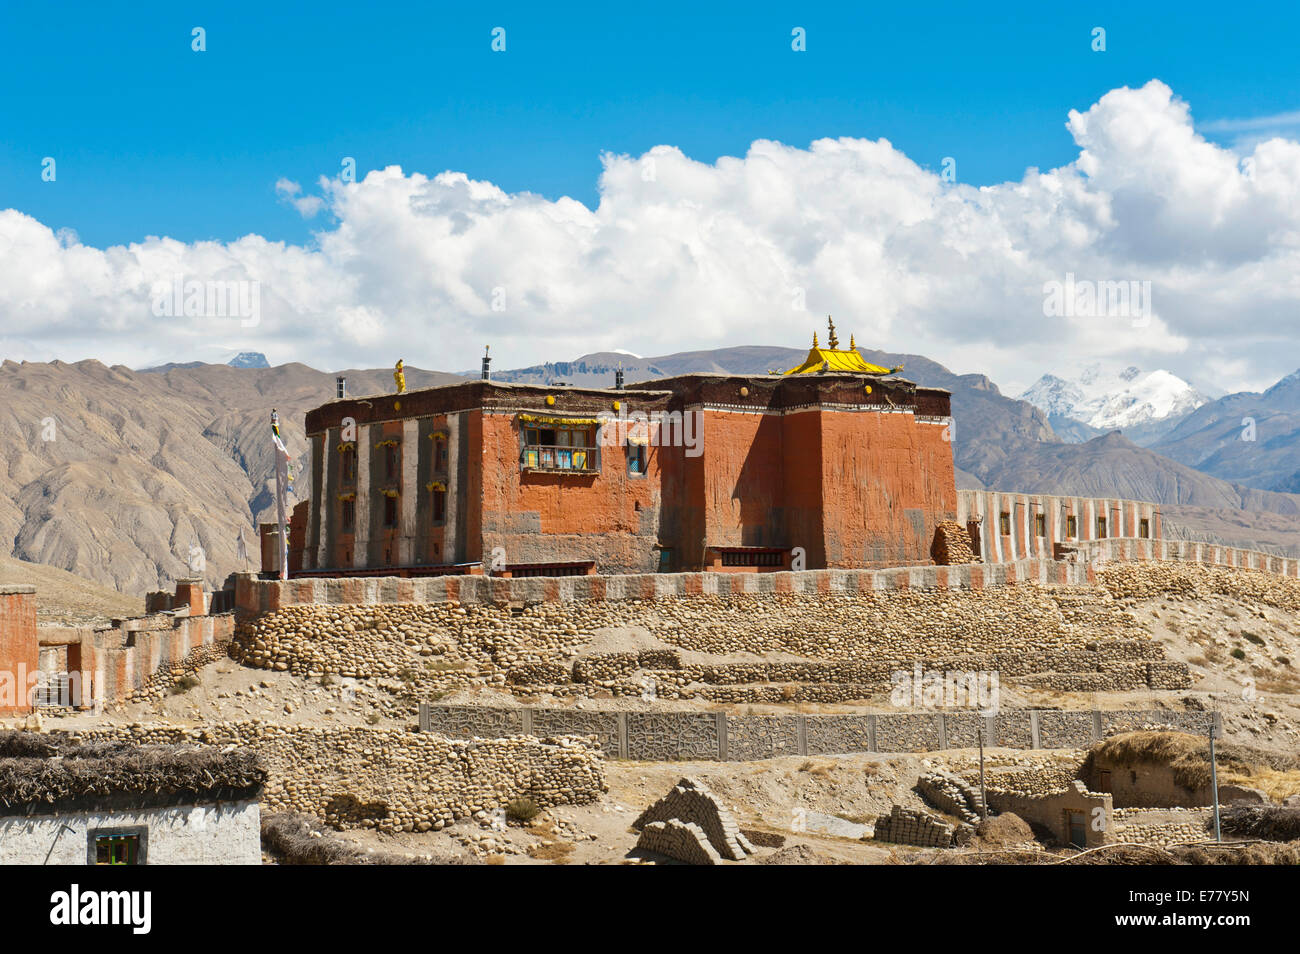 Le bouddhisme tibétain, bâtiment rouge de l'Thubten Shedrup Dargyeling, monastère Sakya secte, Charang, Mustang, Népal Banque D'Images